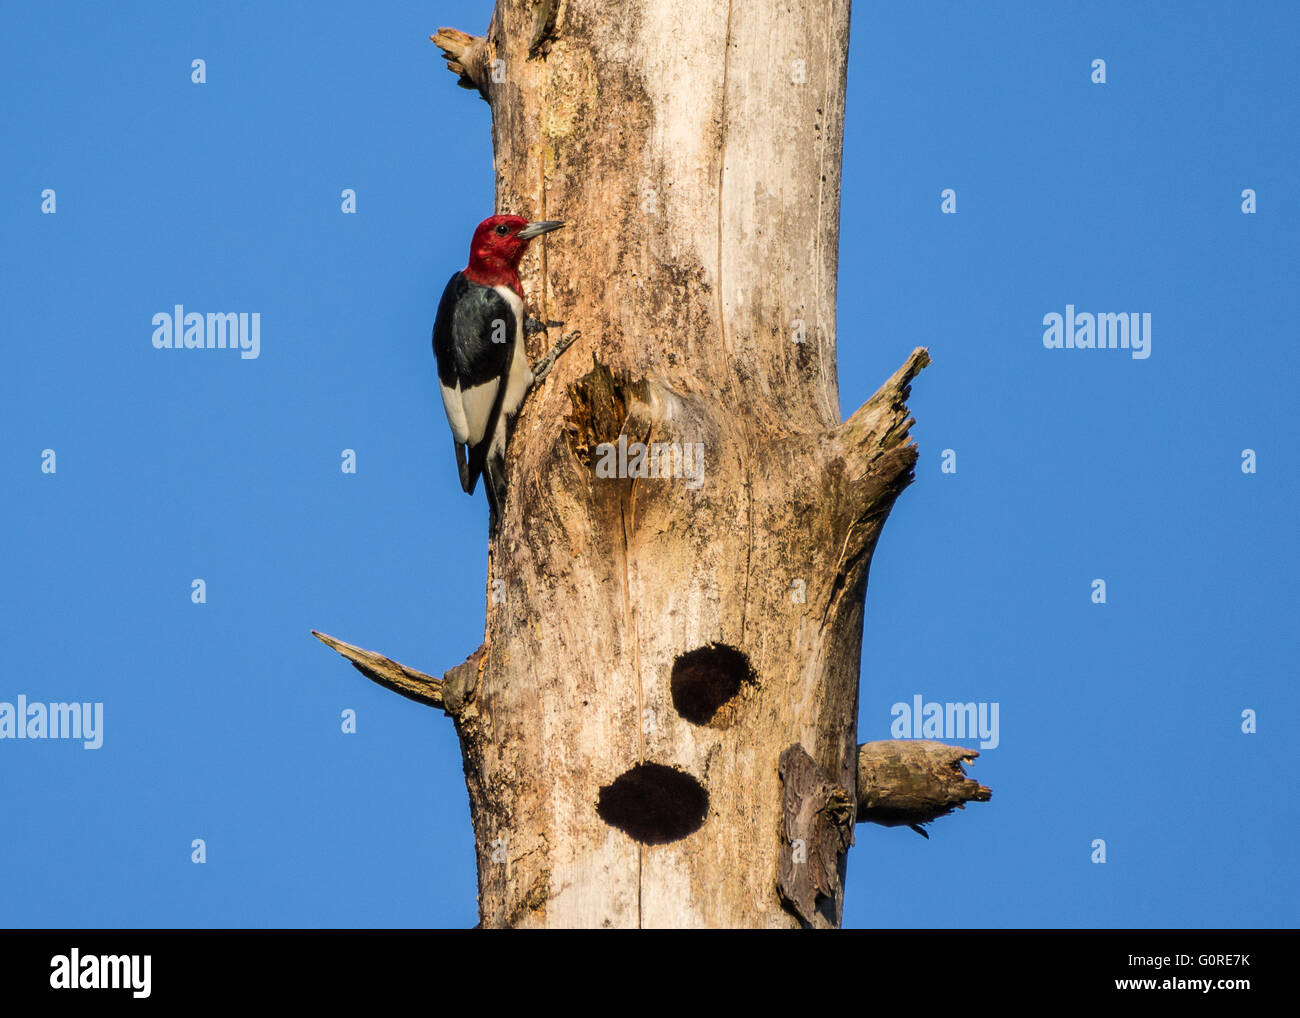 Un hermoso pájaro carpintero de cabeza roja (Melanerpes erythrocephalus) en el tronco de un árbol muerto. Texas, EE.UU. Foto de stock